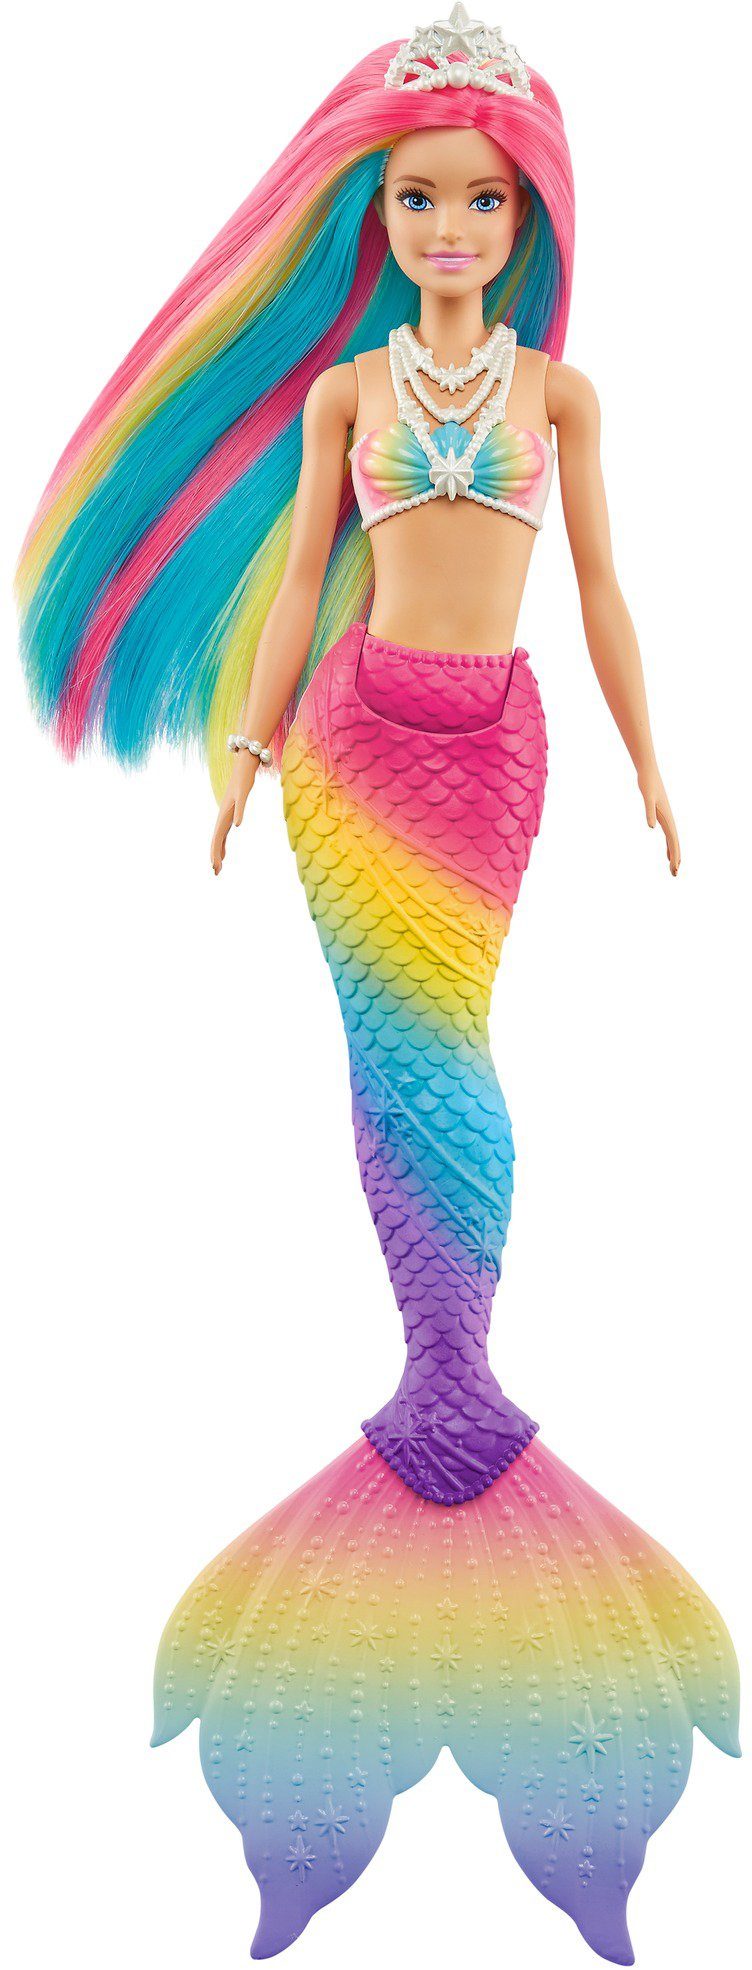 Barbie Meerjungfrauenpuppe »Puppe, Dreamtopia Regenbogenzauber Meerjungfrau  mit Farbwechsel« online kaufen | OTTO